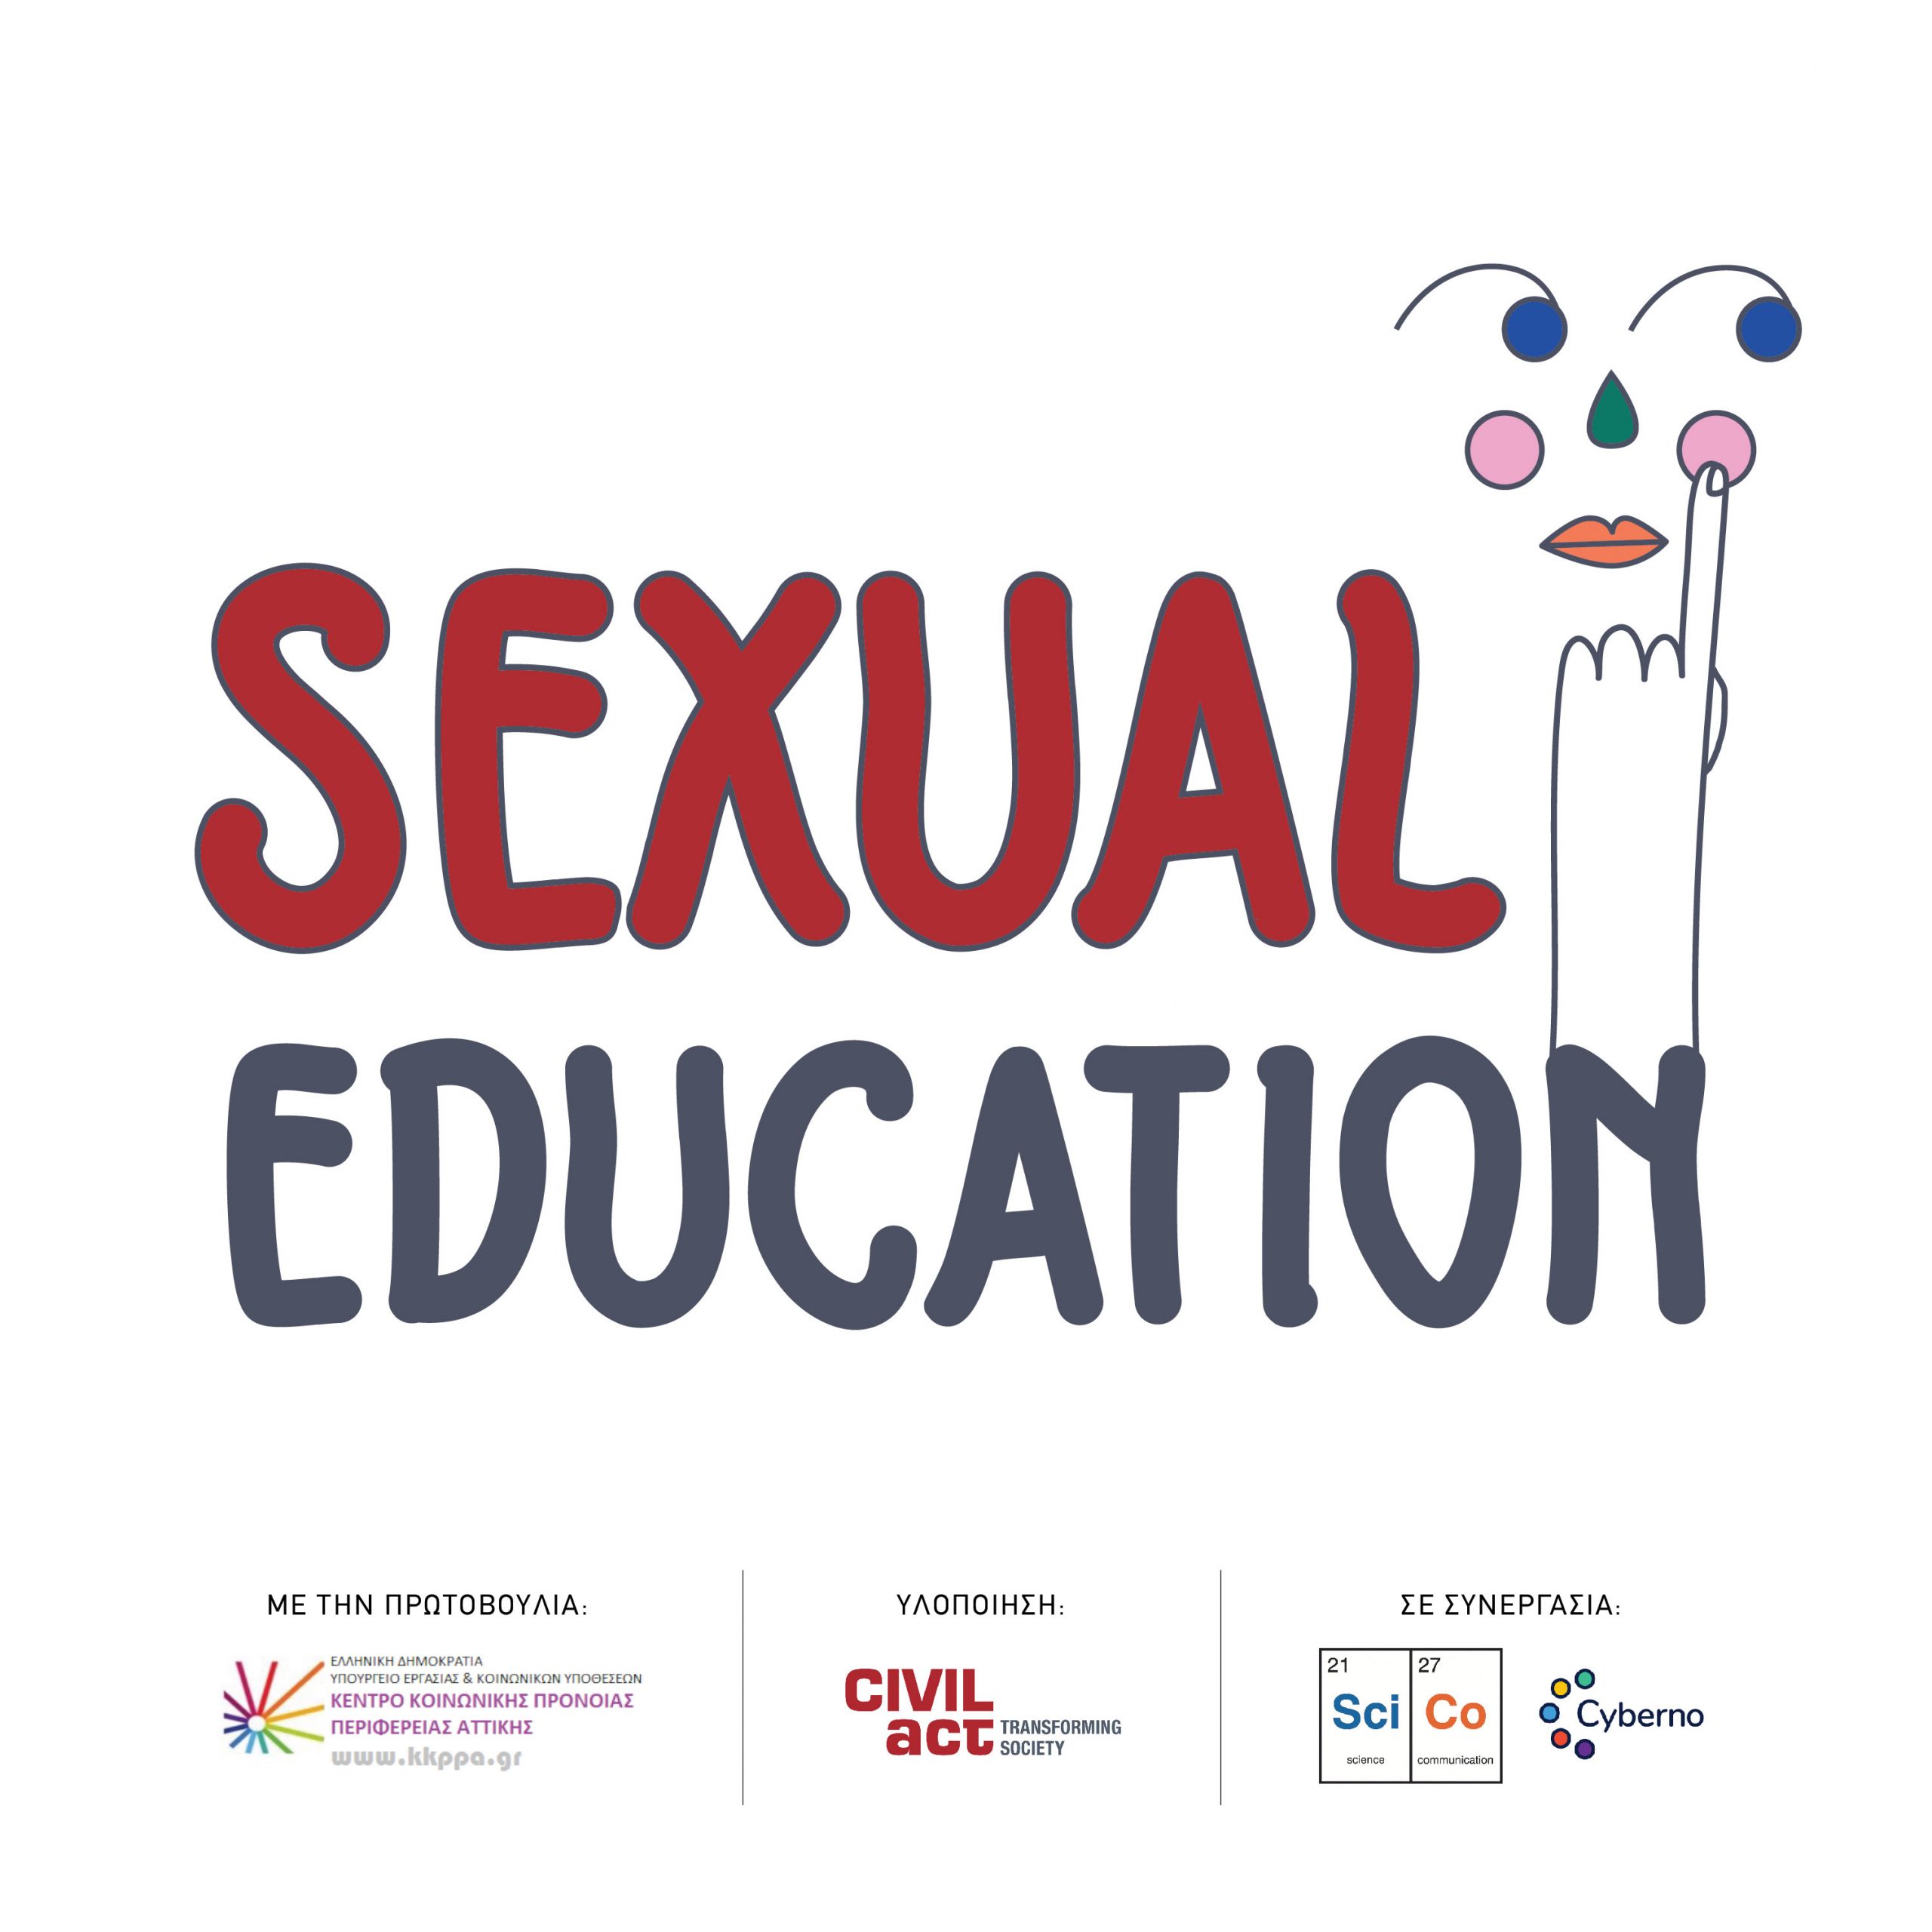 Πολυεπίπεδο πρόγραμμα σεξουαλικής διαπαιδαγώγησης σε κρατικές δομές παιδικής προστασίας